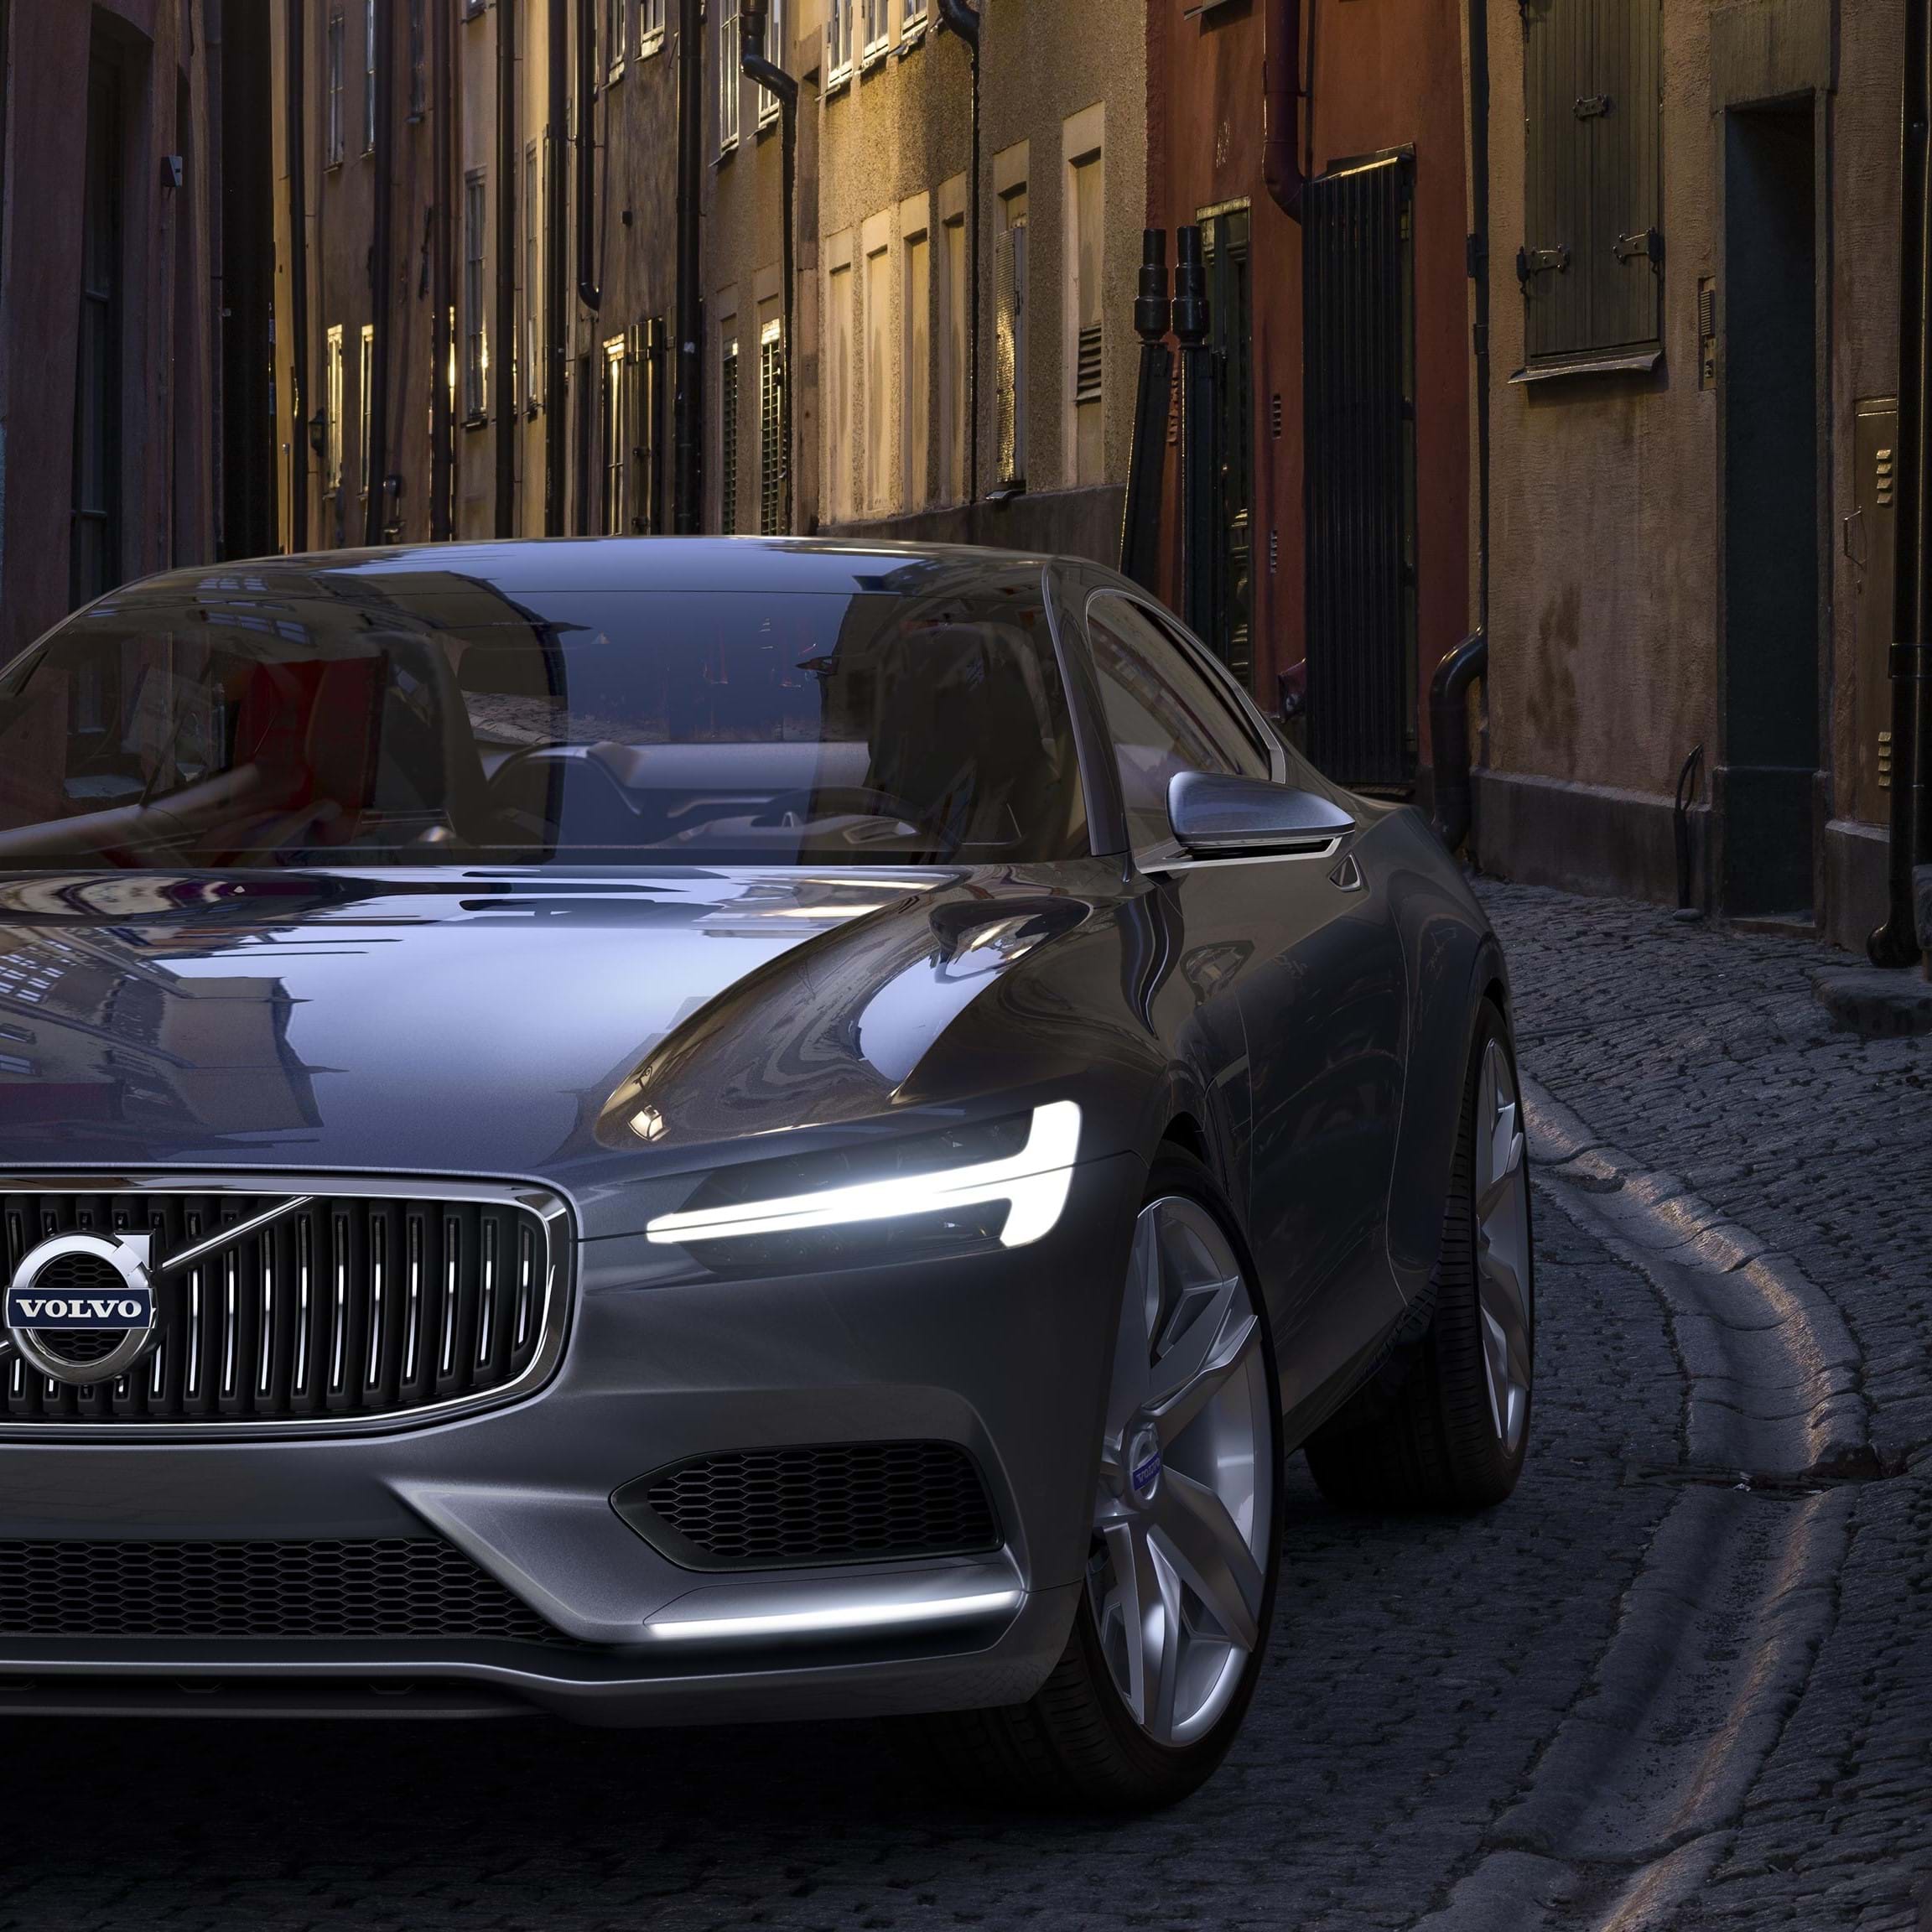 Sivý koncept Volvo kupé pri jazde po mestskej ulici s dlažobnými kockami